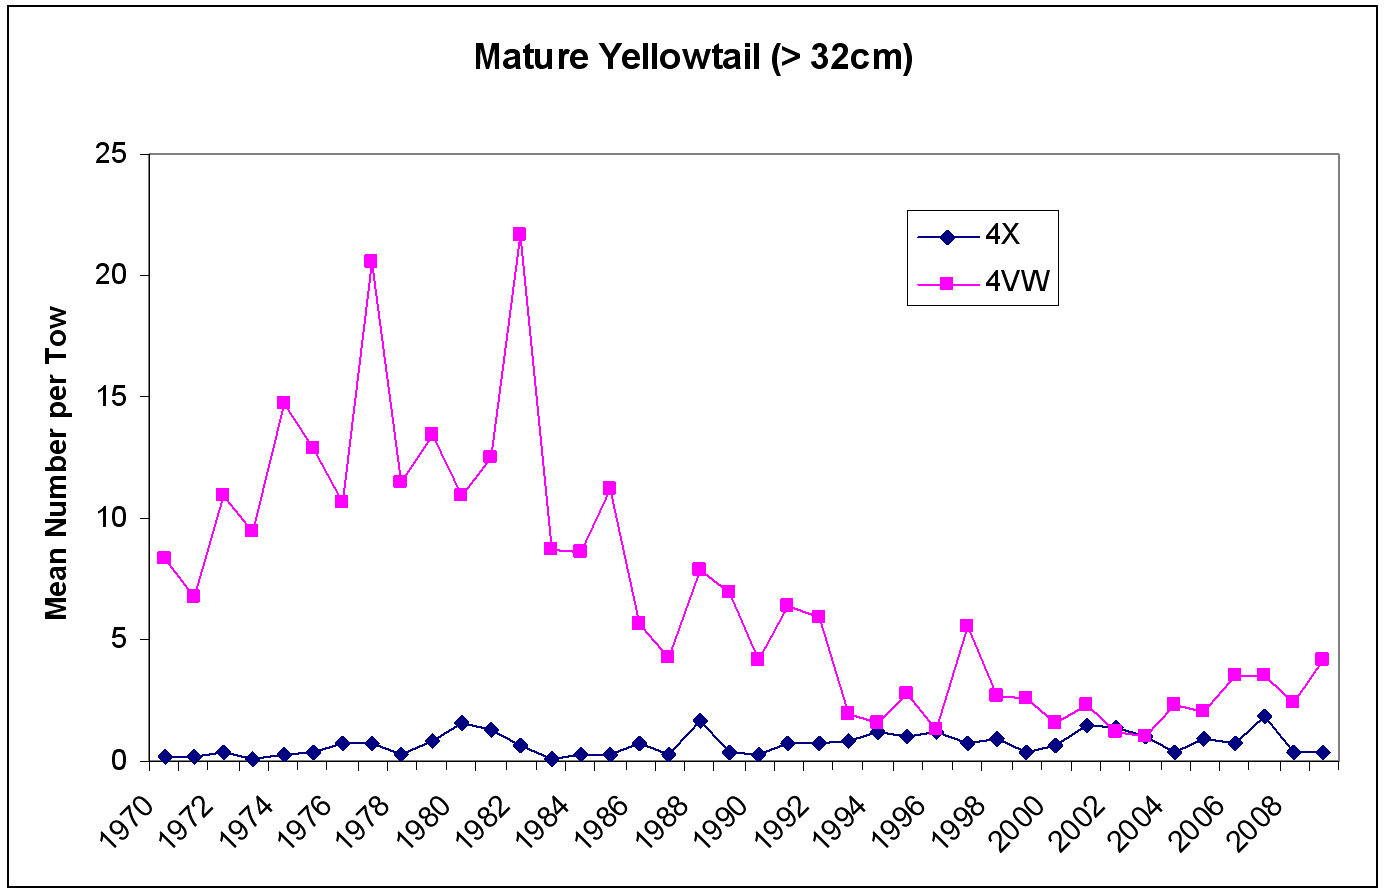 Figure 13 - Mature Yellowtail chart